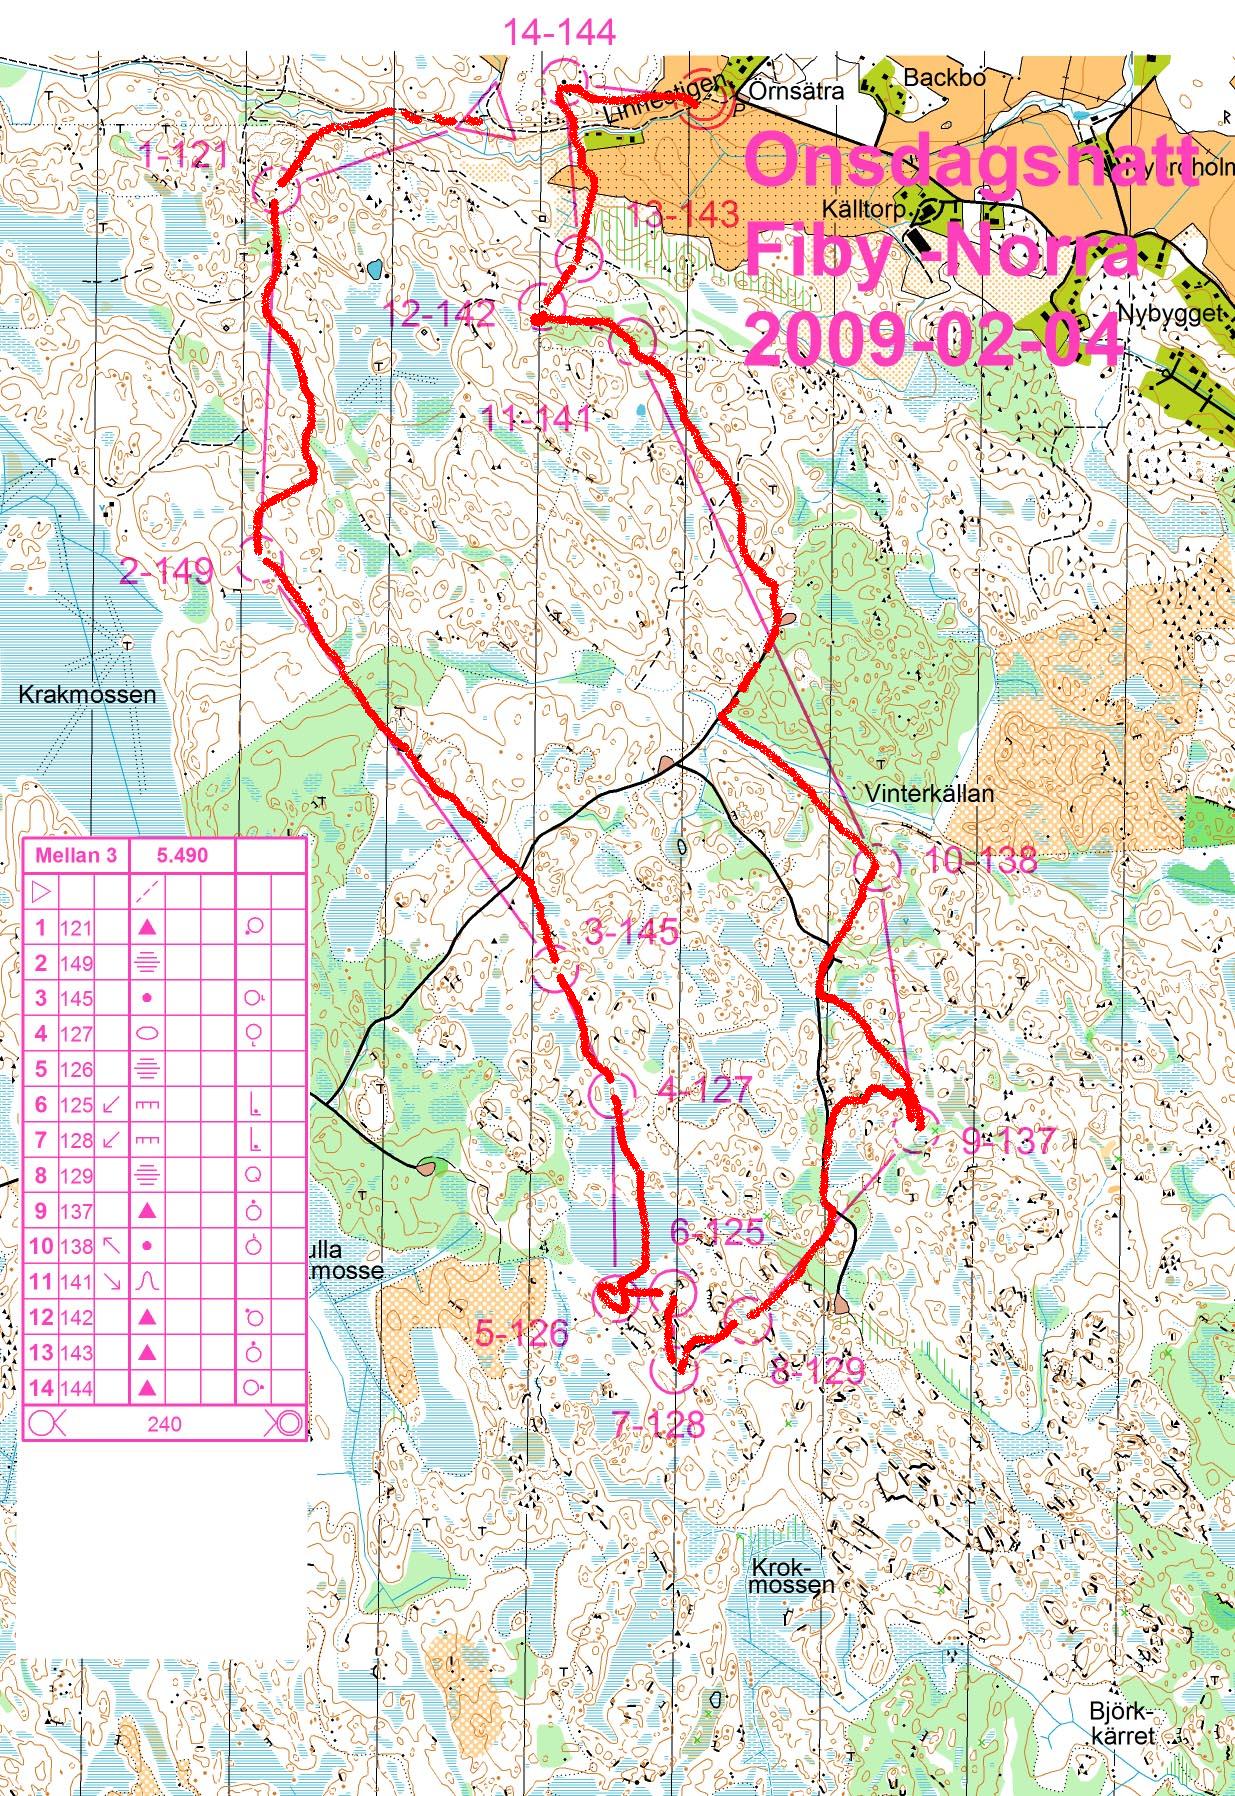 Onsdagsnatt - Fiby Norra (2009-02-04)